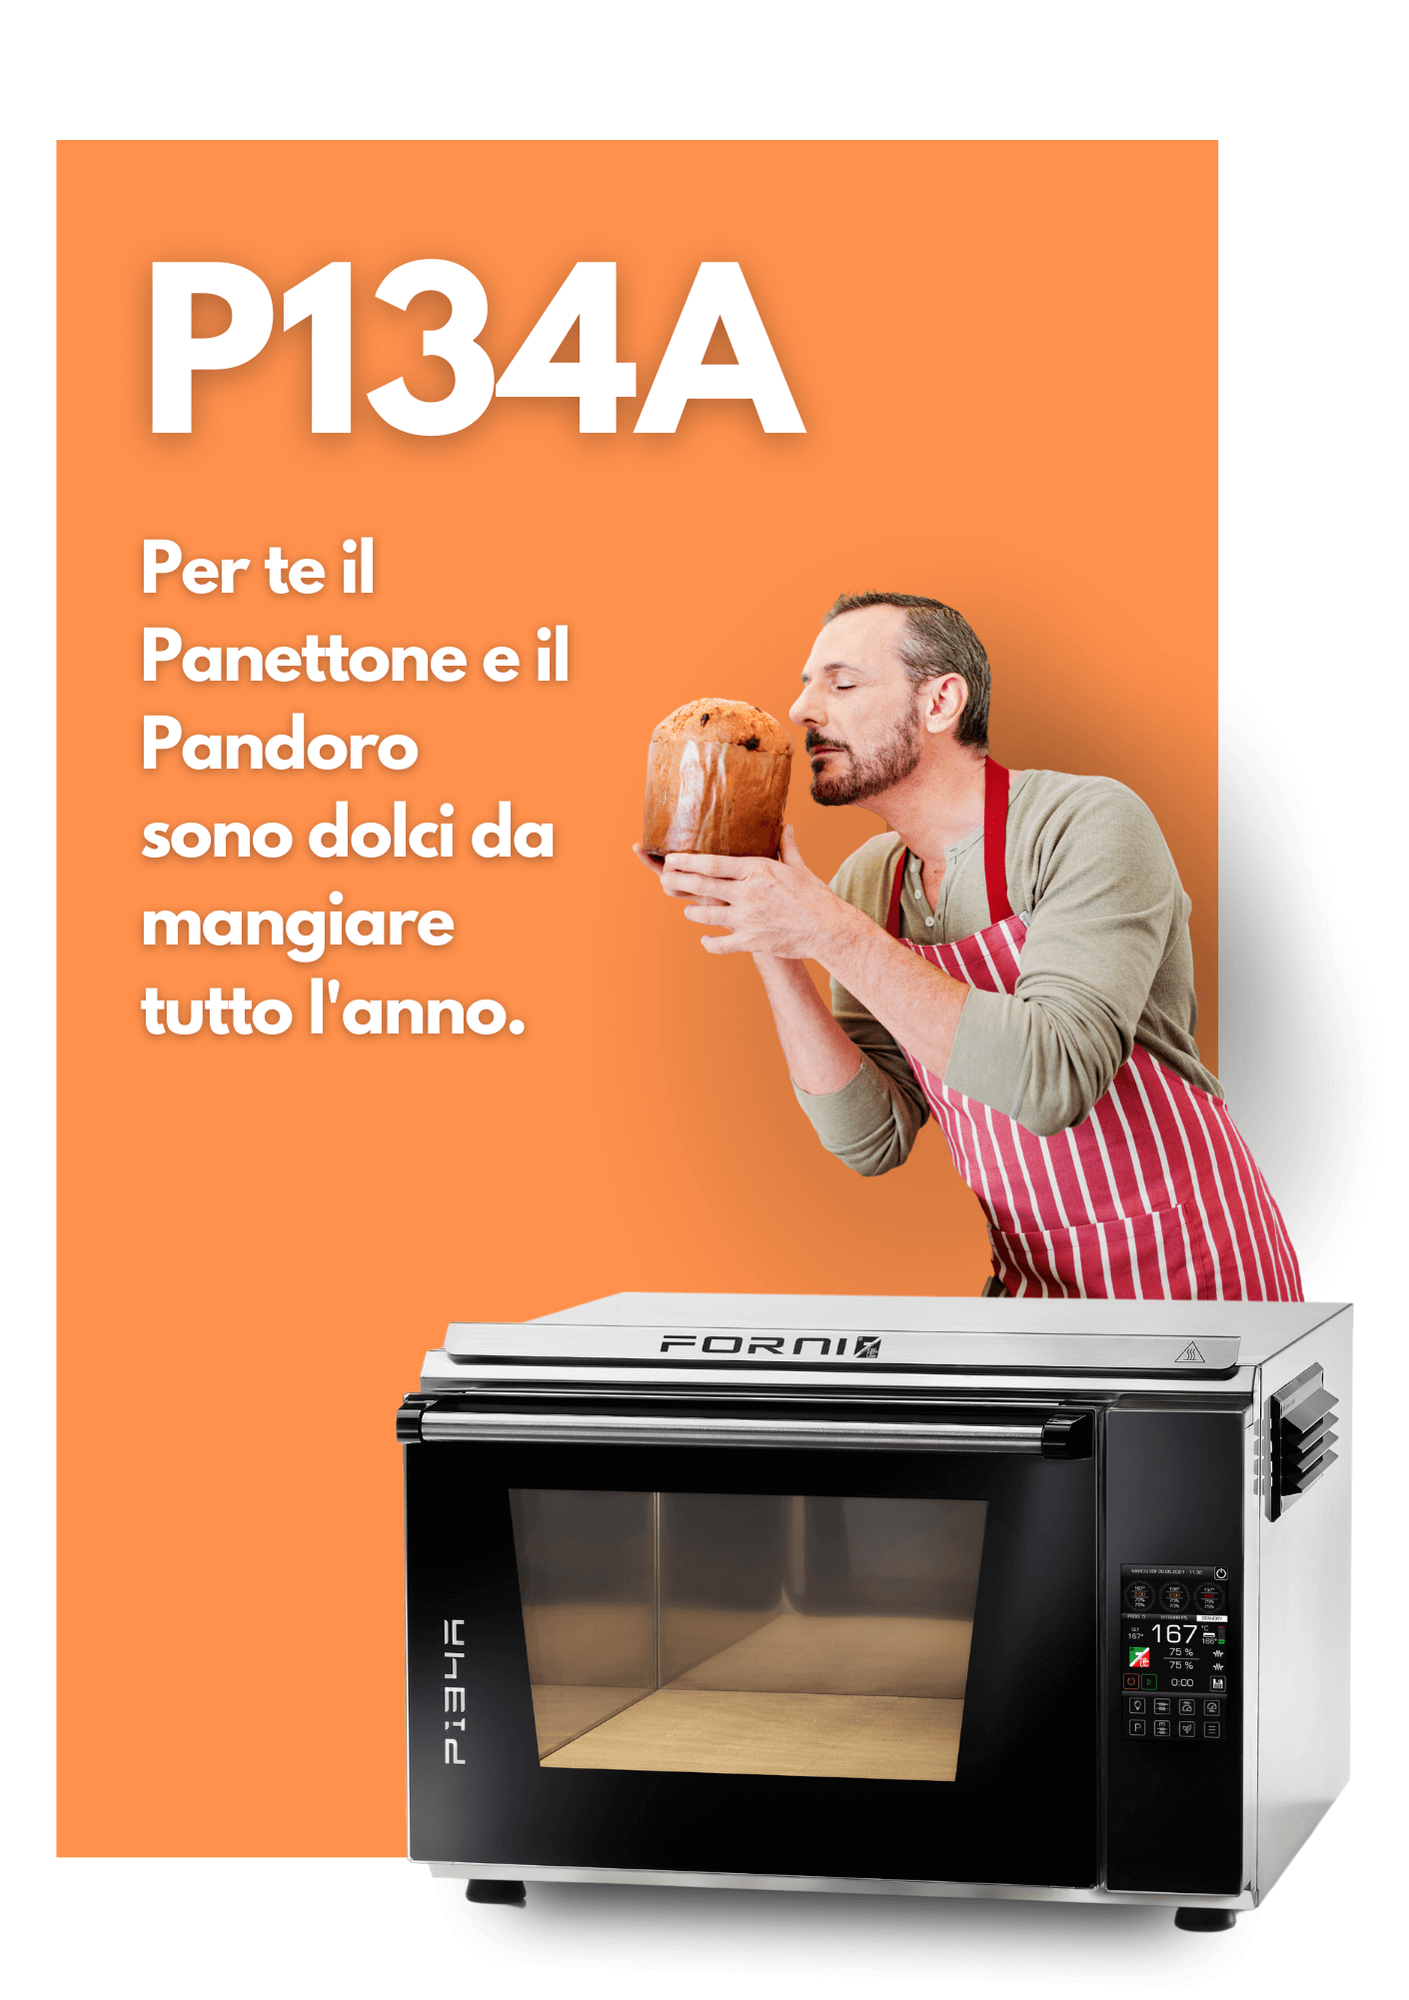 P134A-effeuno-forni-professionali-pizza